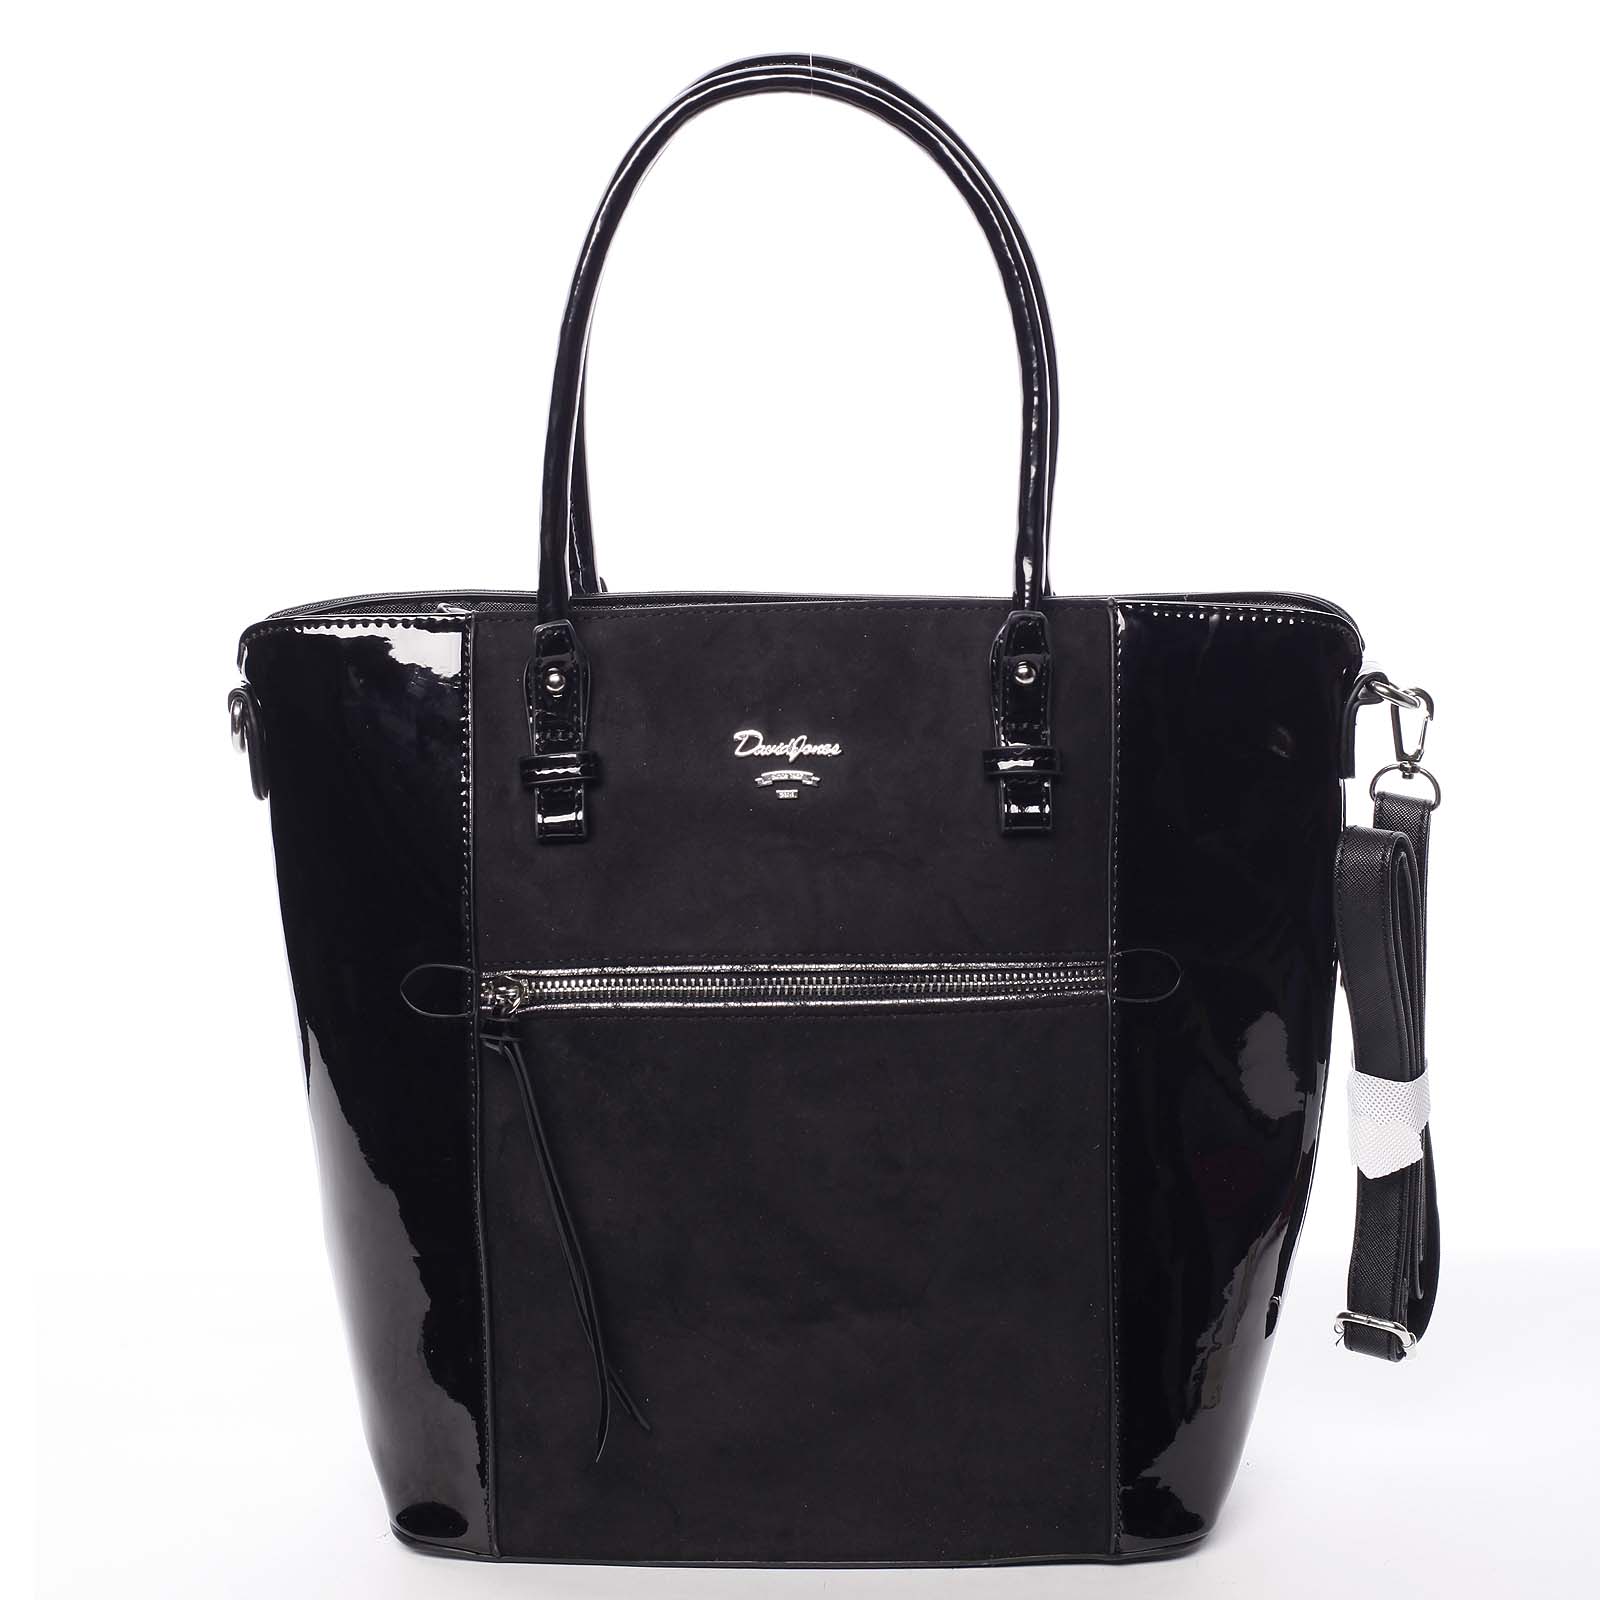 Veľká čierna luxusná pololakovaná kabelka cez rameno - David Jones Rayly